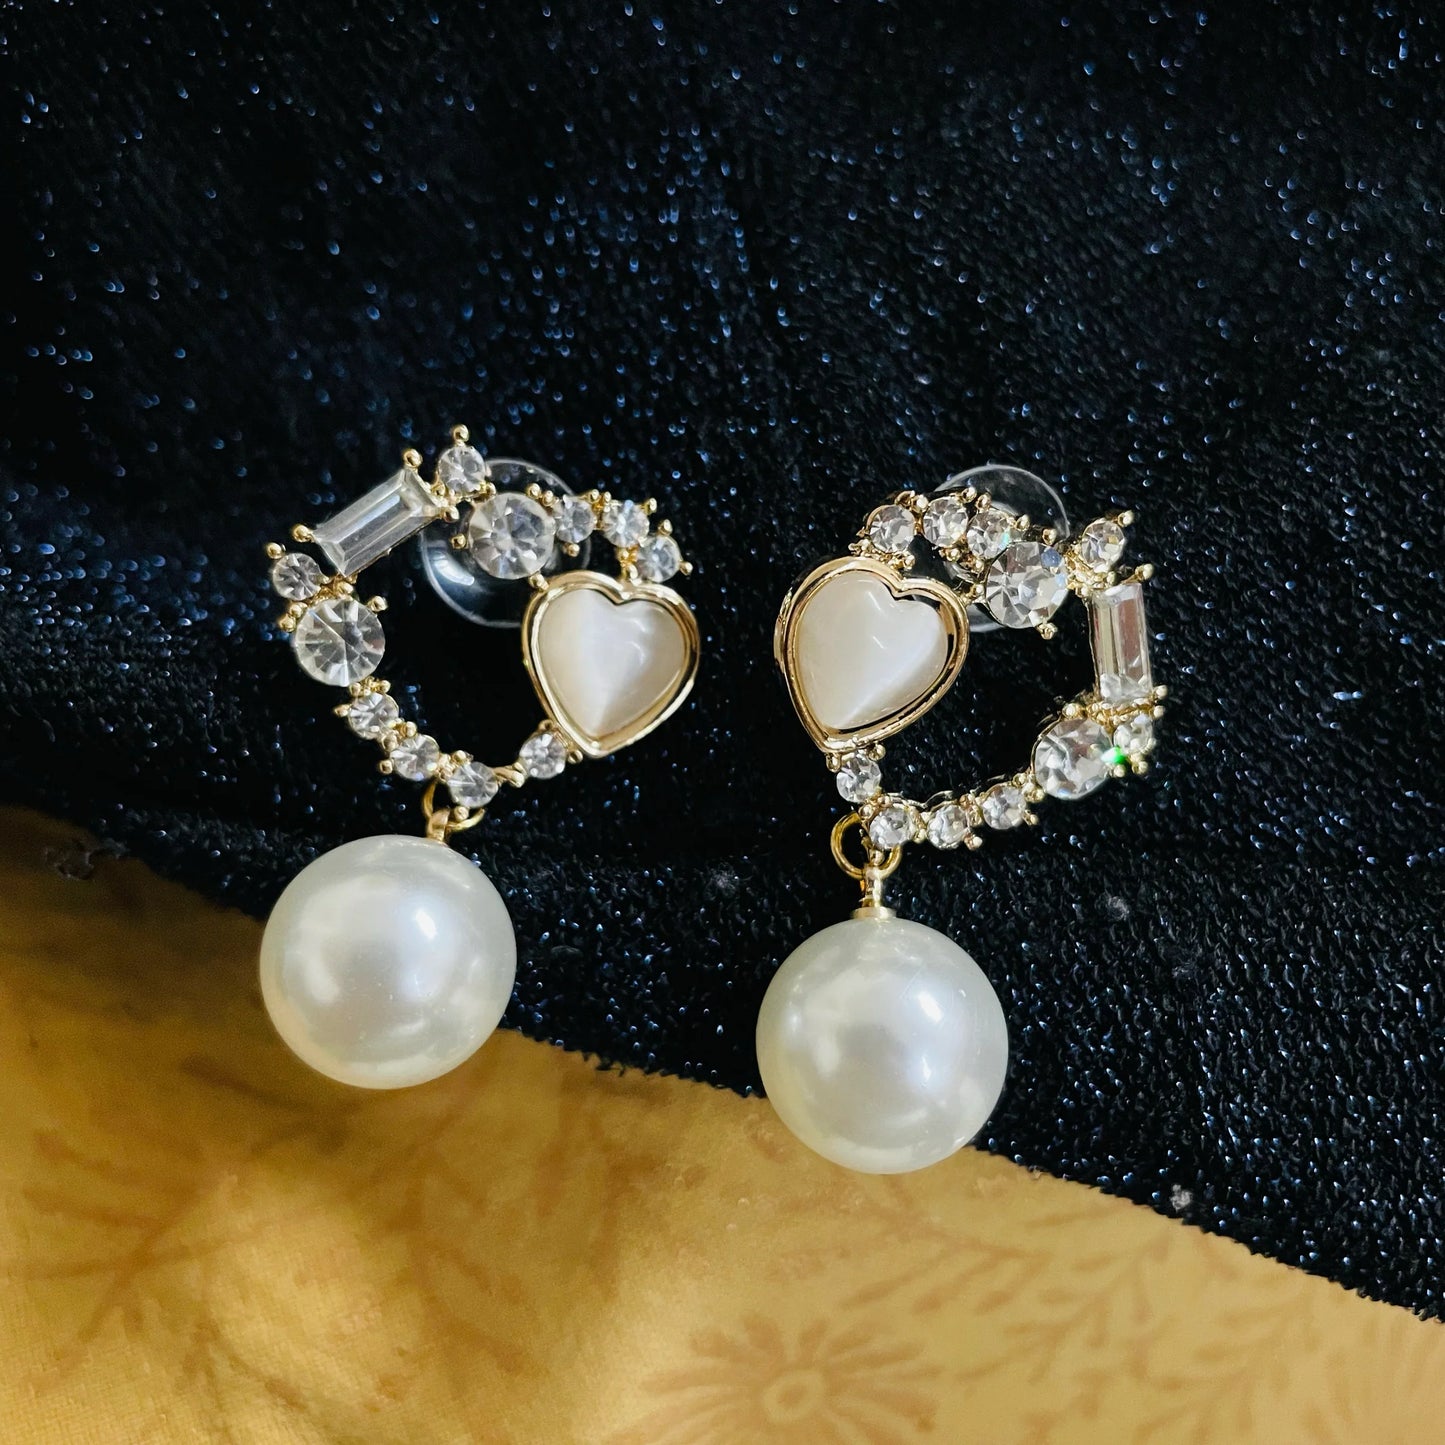 Luxury Zircon Heart Pearl Drop Earrings